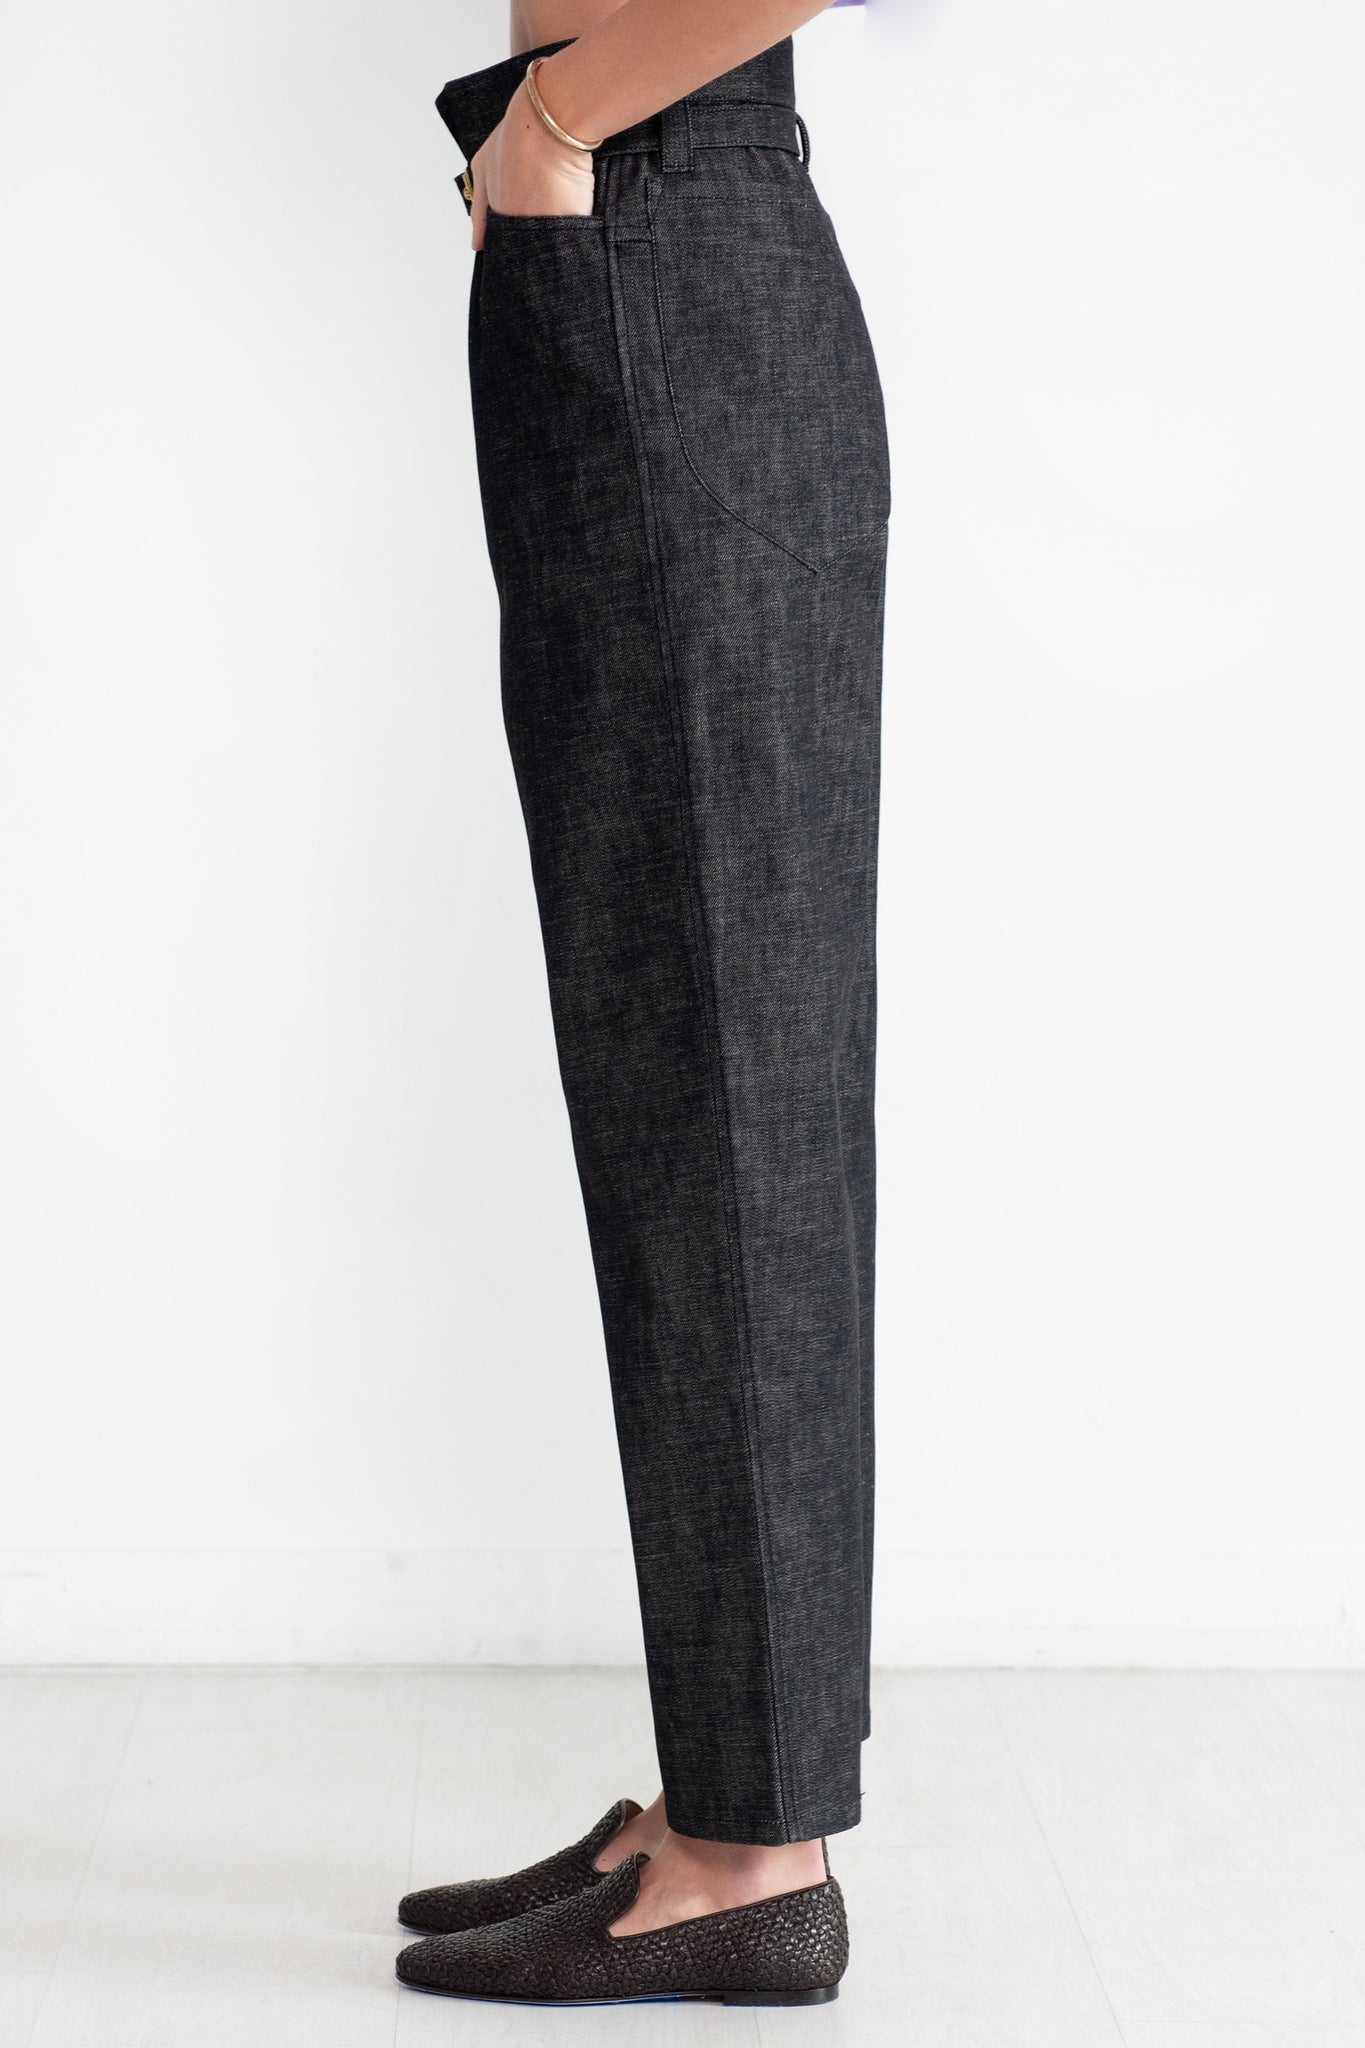 VERONIQUE LEROY - Carrot Trousers, Black